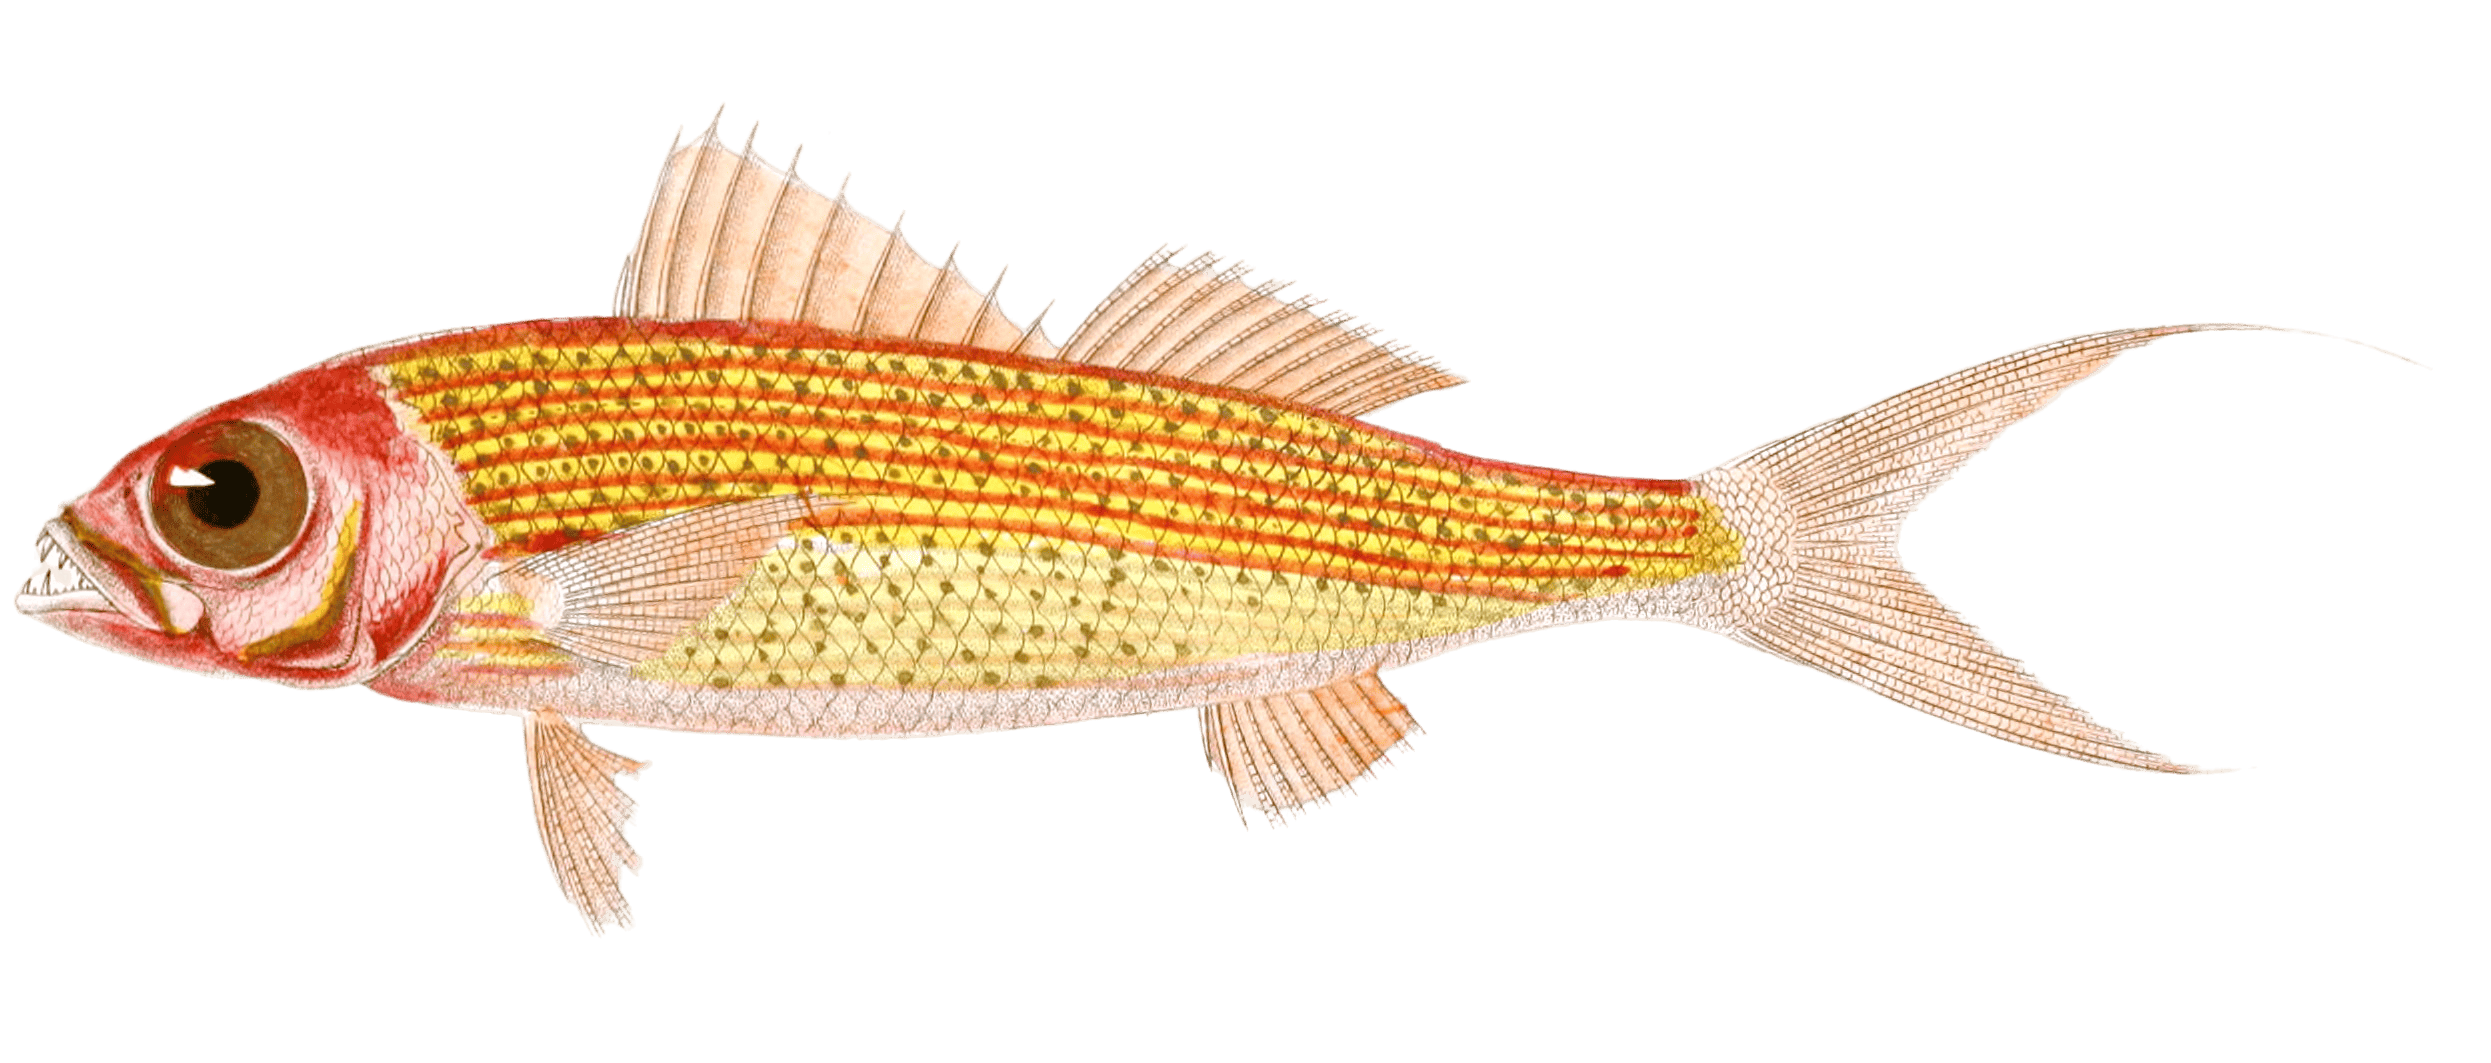 Etelis Escarboucle Etelis Carbunculus. N. Vintage Fish Illustrations In The Public Domain